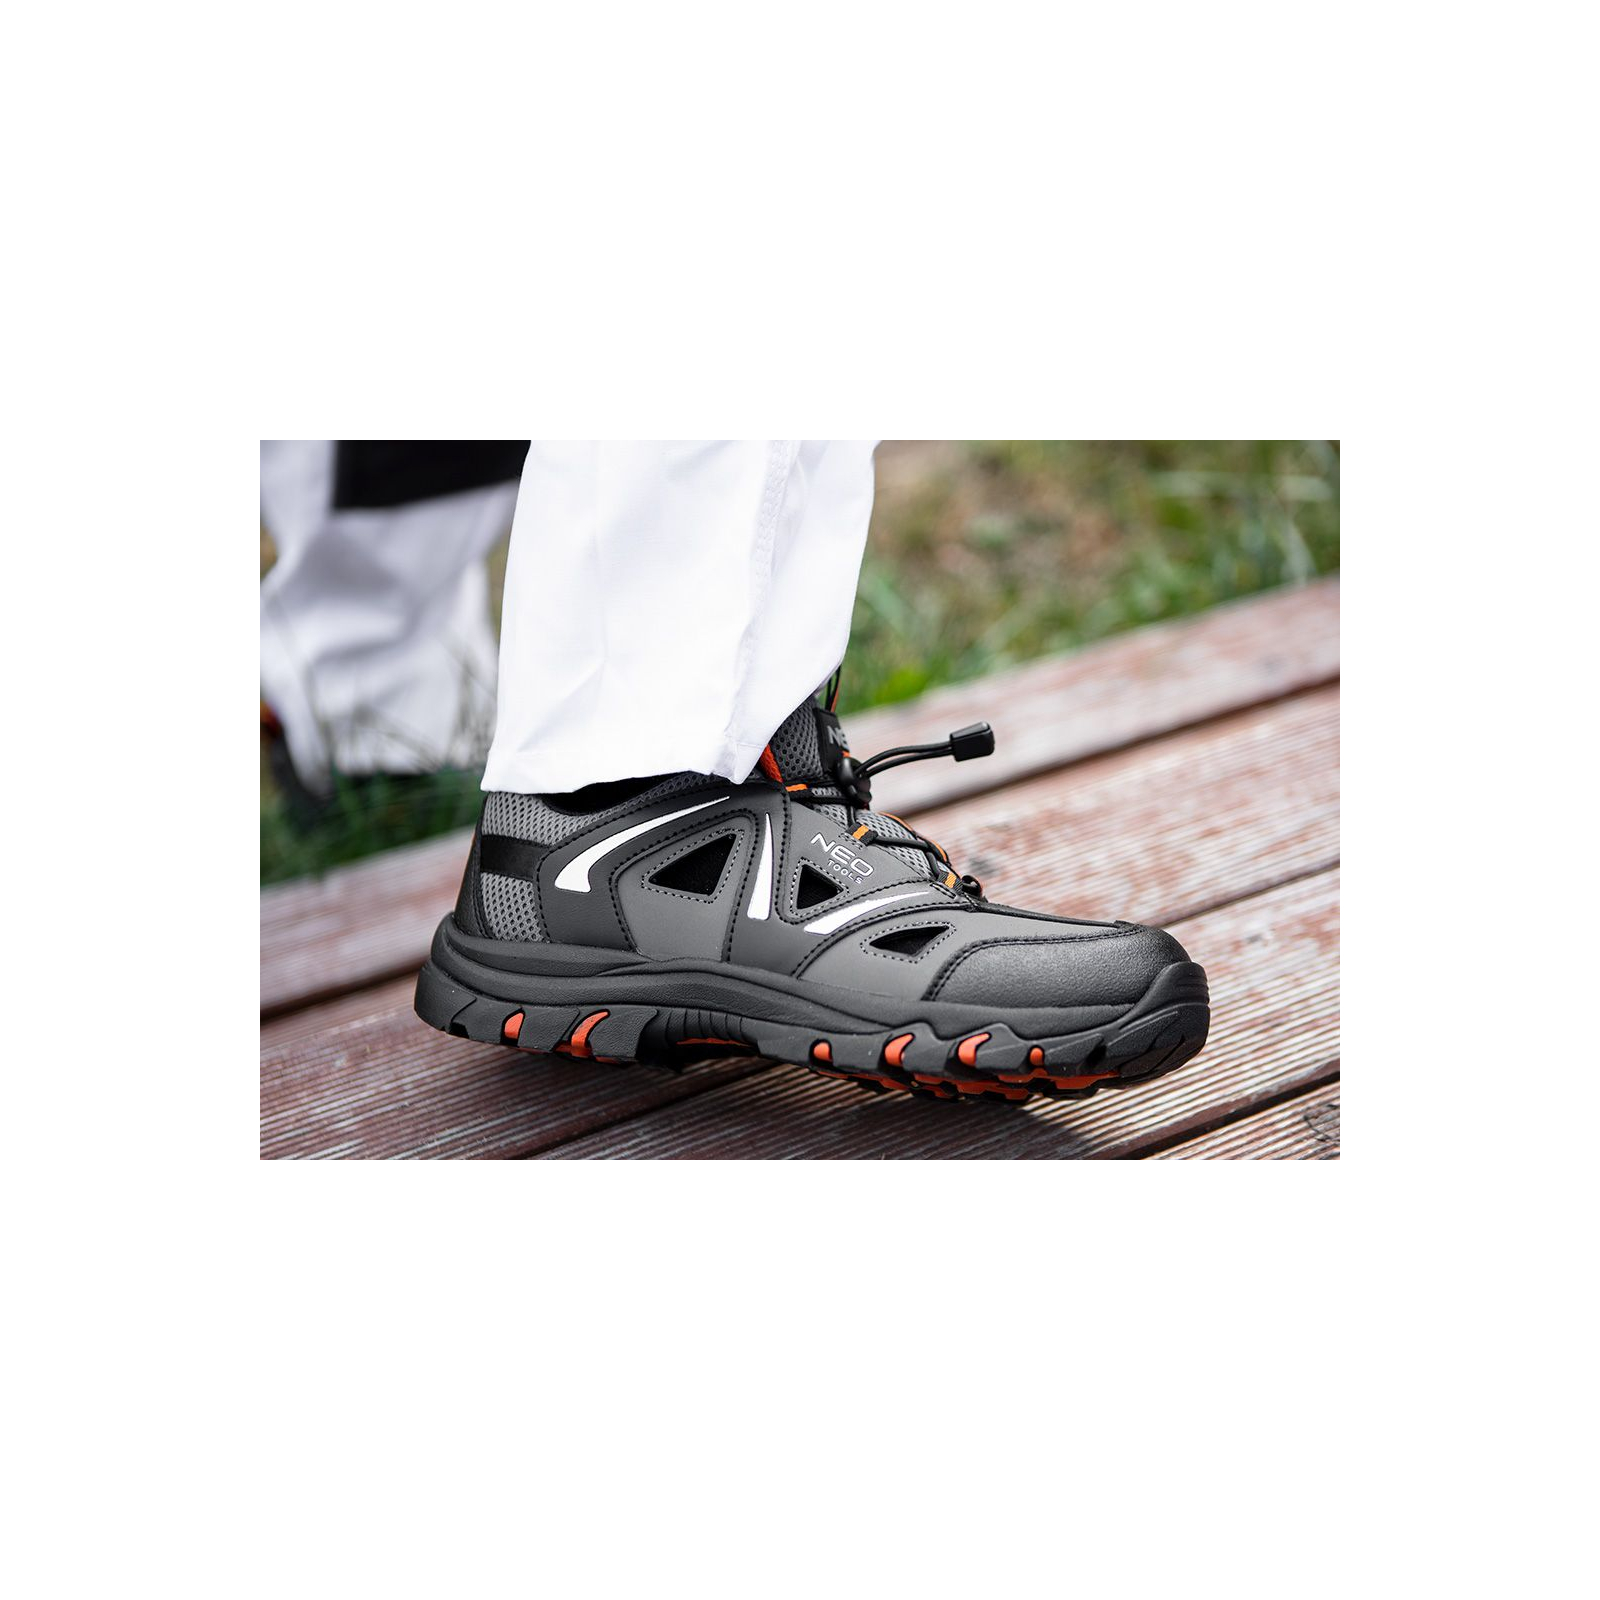 Ботинки рабочие Neo Tools кроссовки дышащие, подошва EVA, класс защиты OB, SRA, р.39 (82-720) изображение 3